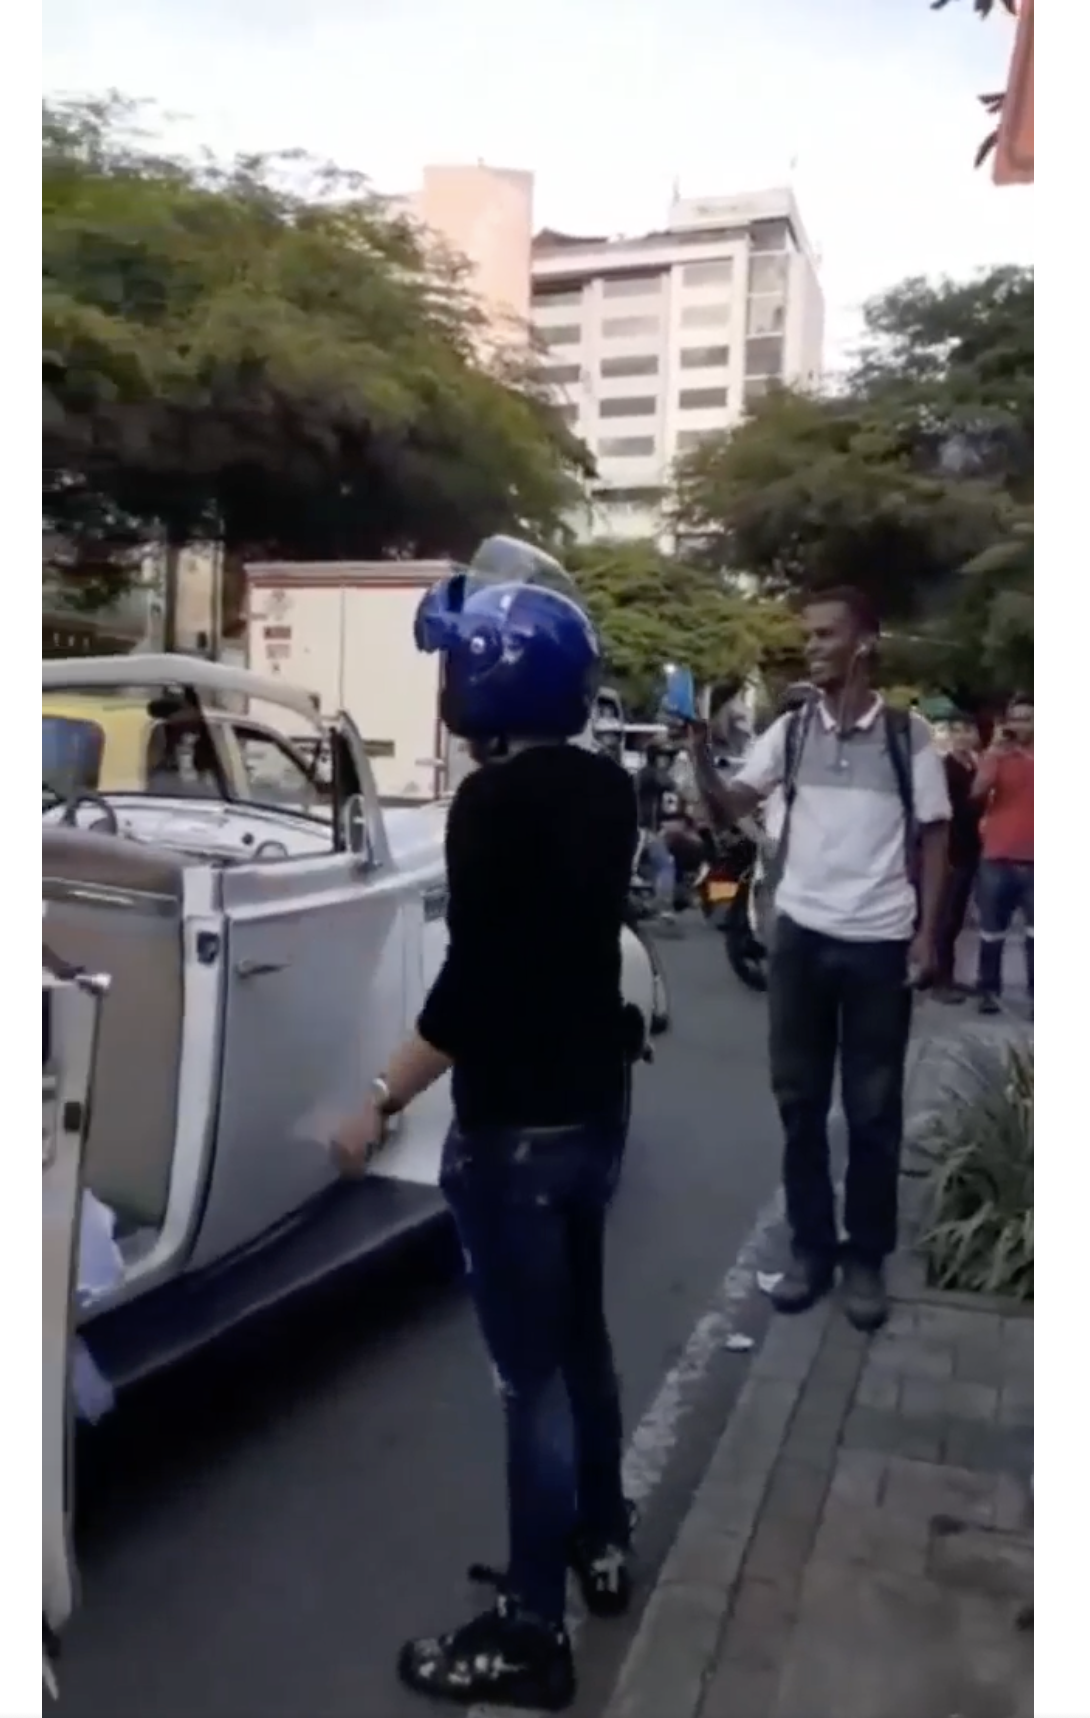 El motorista y un espectador que grabó el incidente con una cámara aparecen en la carretera en Medellín, Colombia | Foto: facebook.com/maspopulareventos